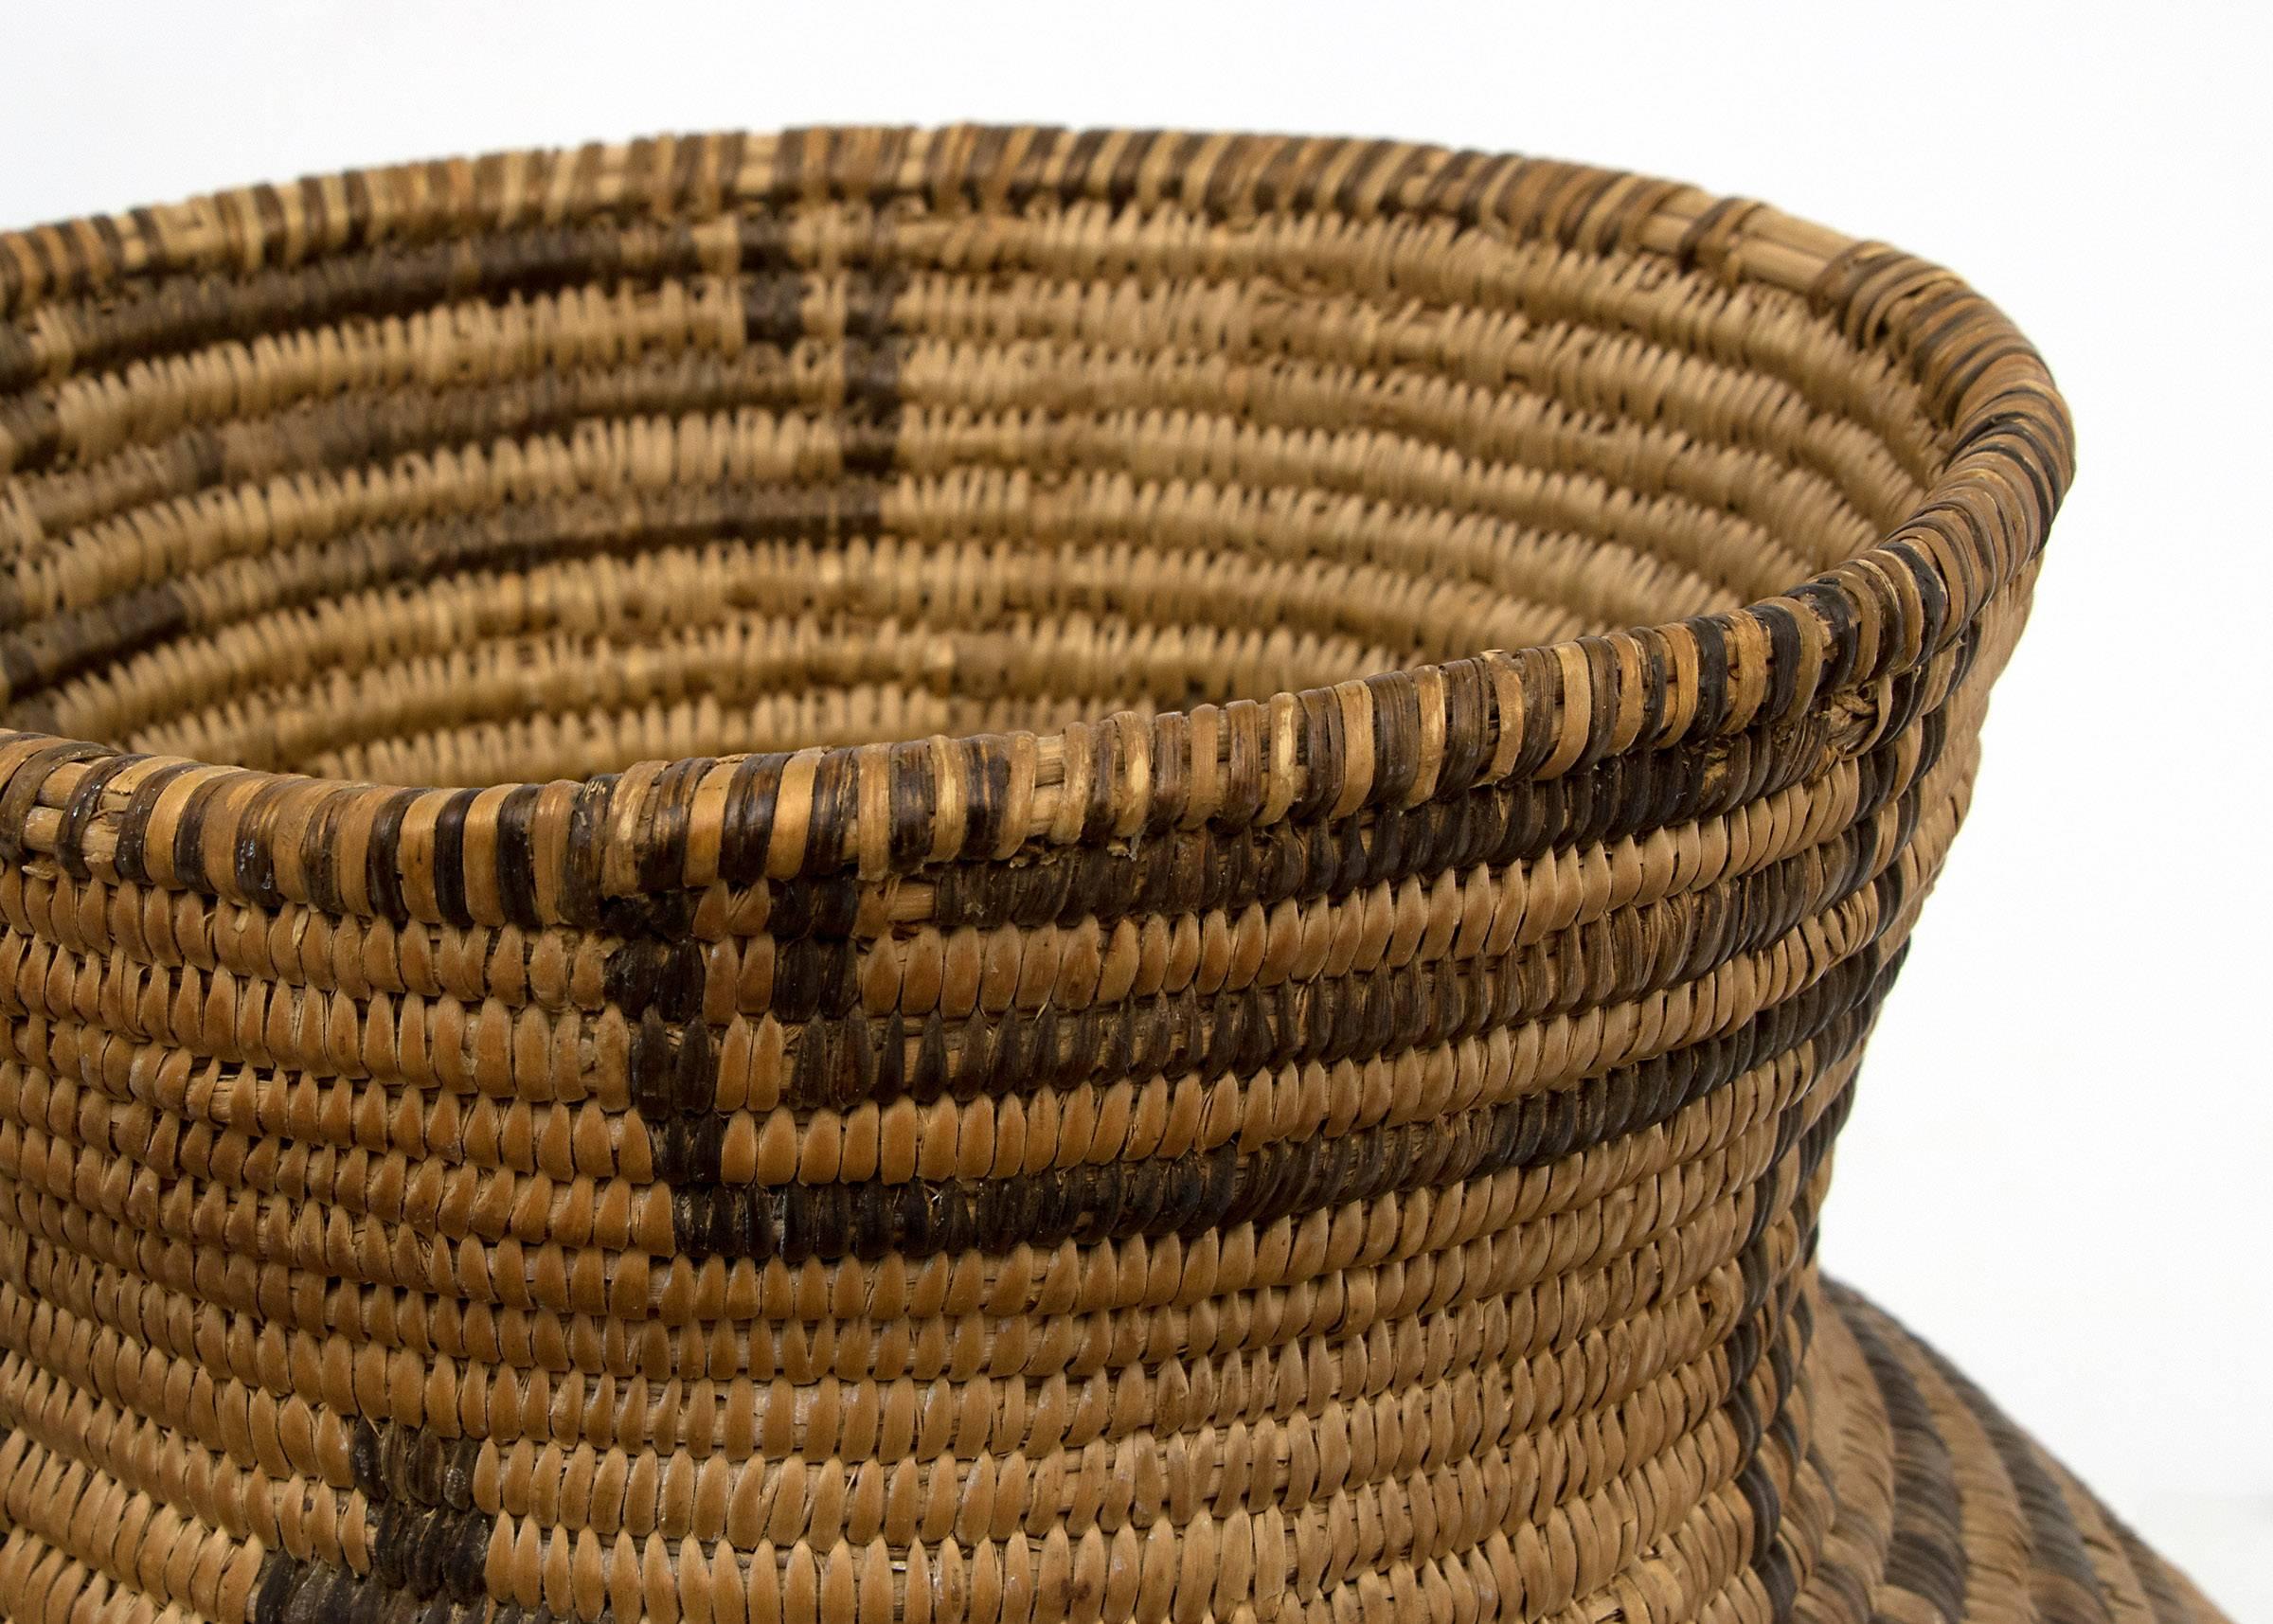 Hand-Woven Antique Southwestern Native American Apache Basket, circa 1905